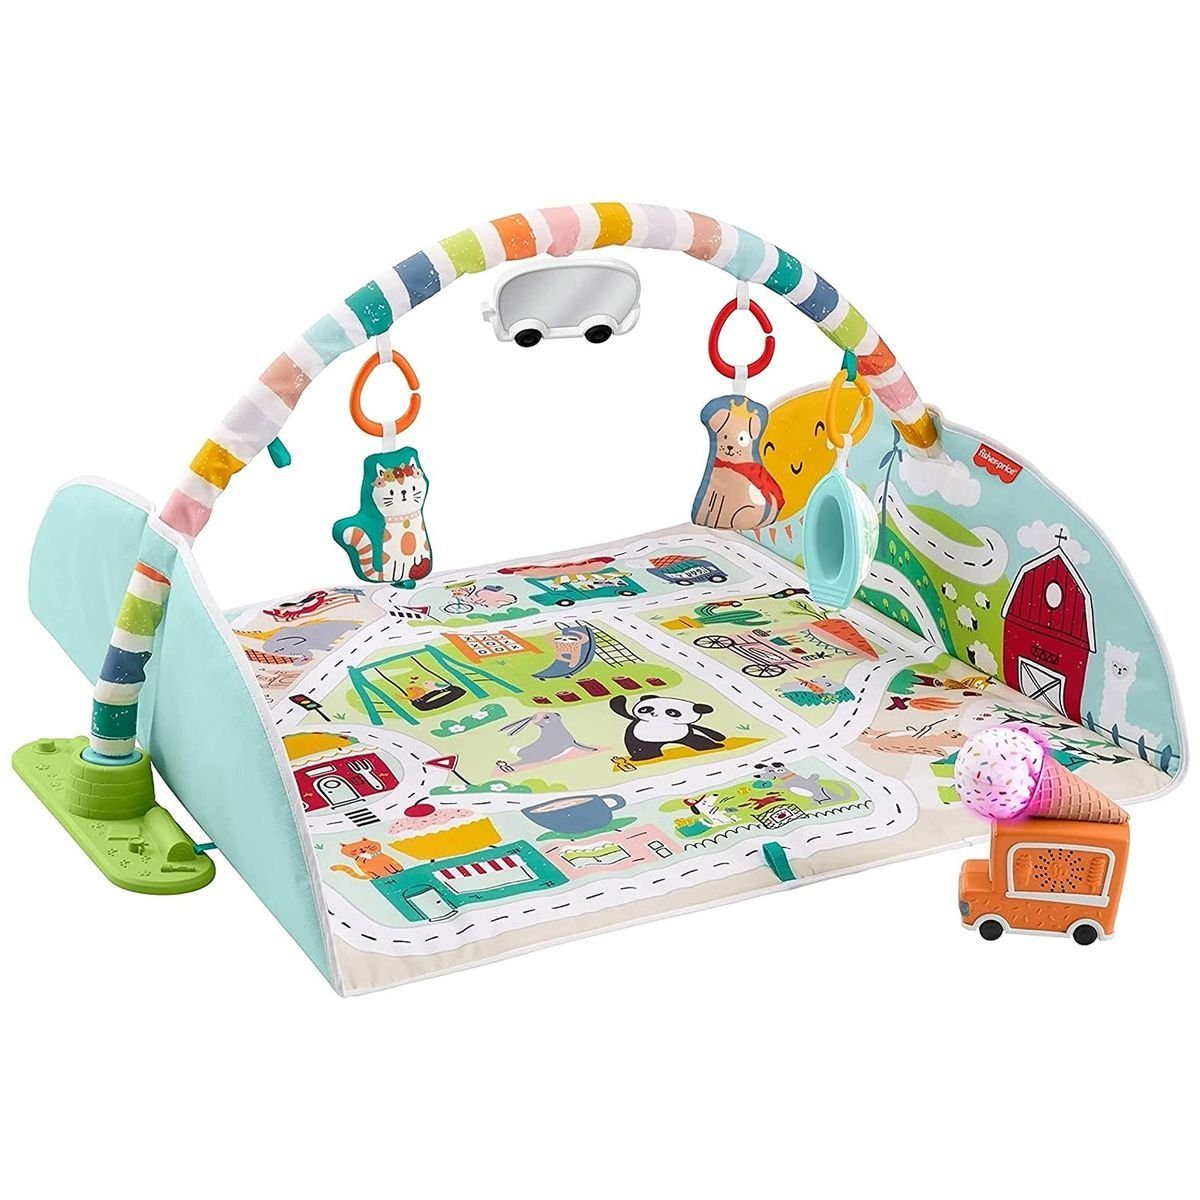 Mattel® Baby Gym Mattel GJD41 - Fisher-Price - Jumbo Abenteuer Spieldecke  mit Spielzeug, Enthält 7 Spielzeuge, einschließlich 3 Spielzeugautos, 2  Tiere und 2 Spielteile